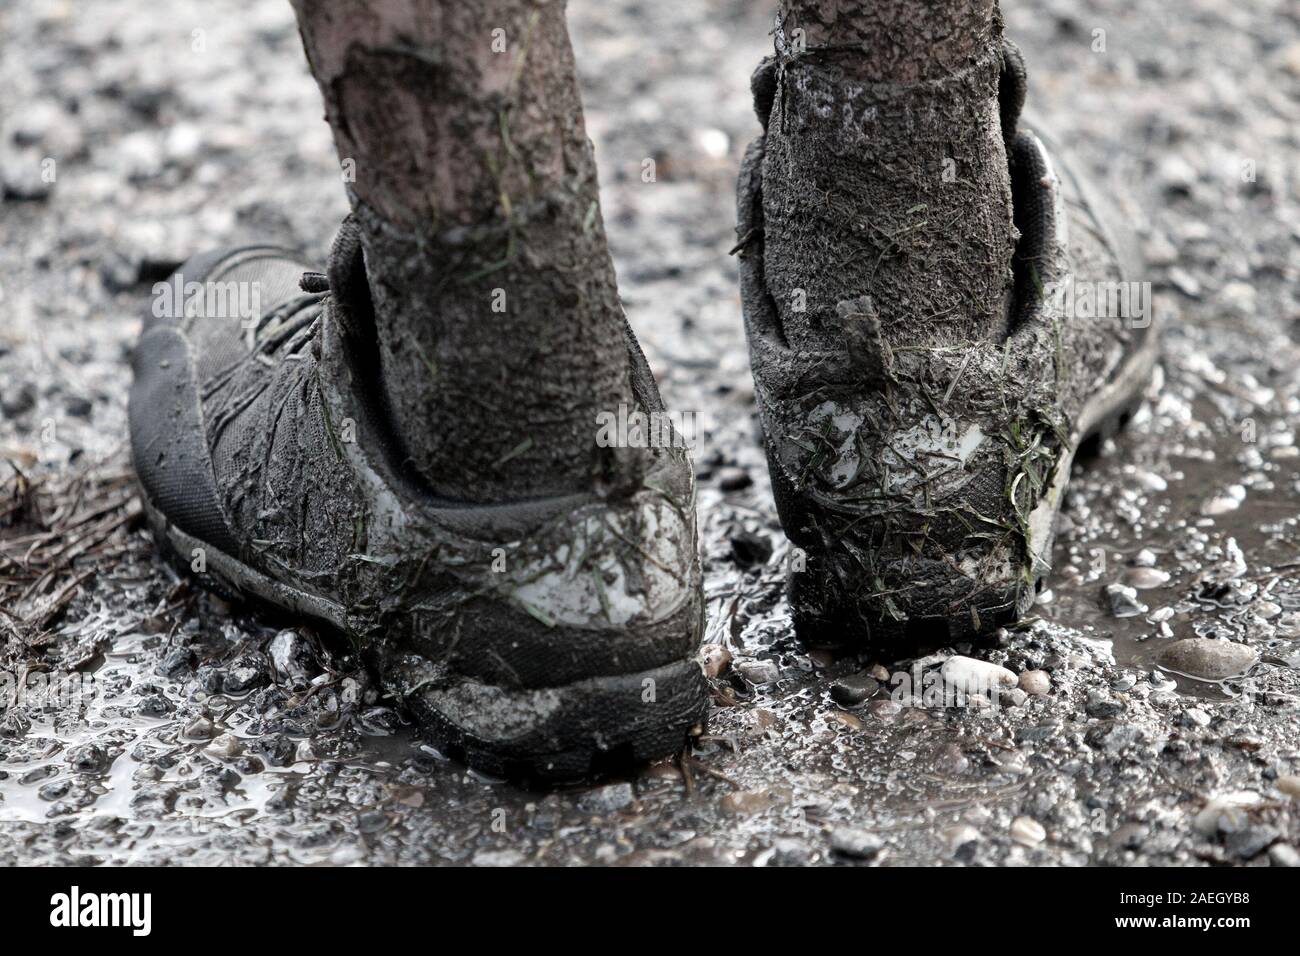 mud run trainers